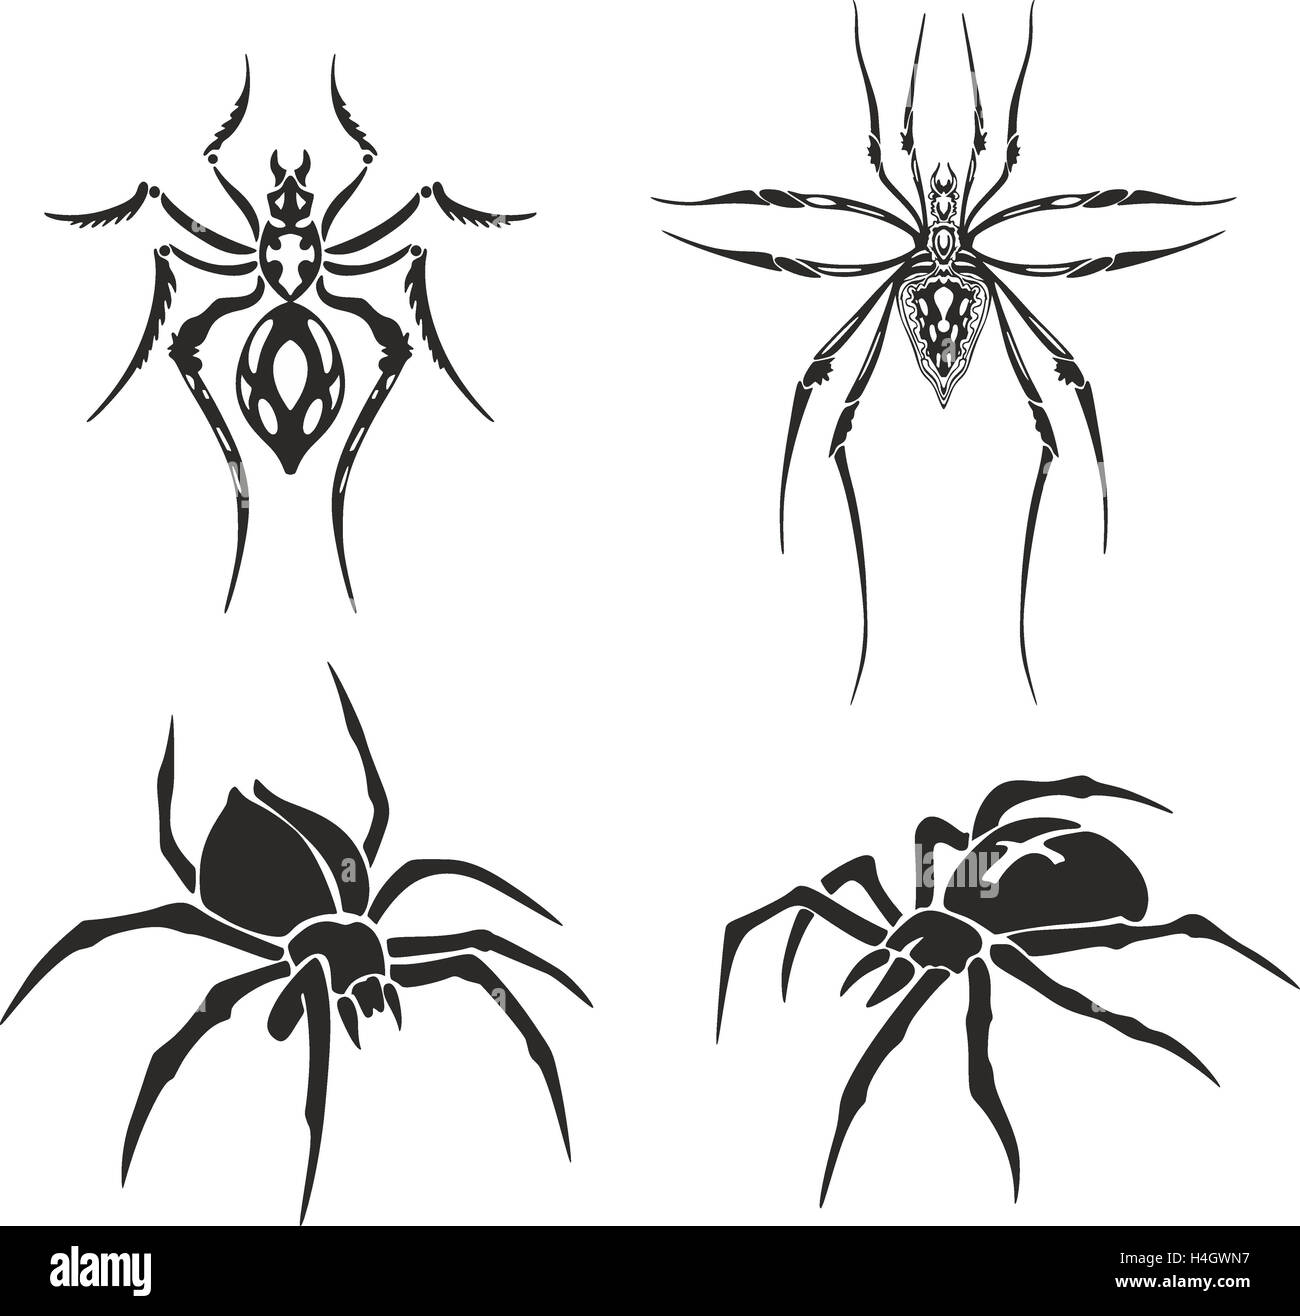 Tatouage noir et blanc ensemble d'araignées y compris ébauches symétriques Banque D'Images